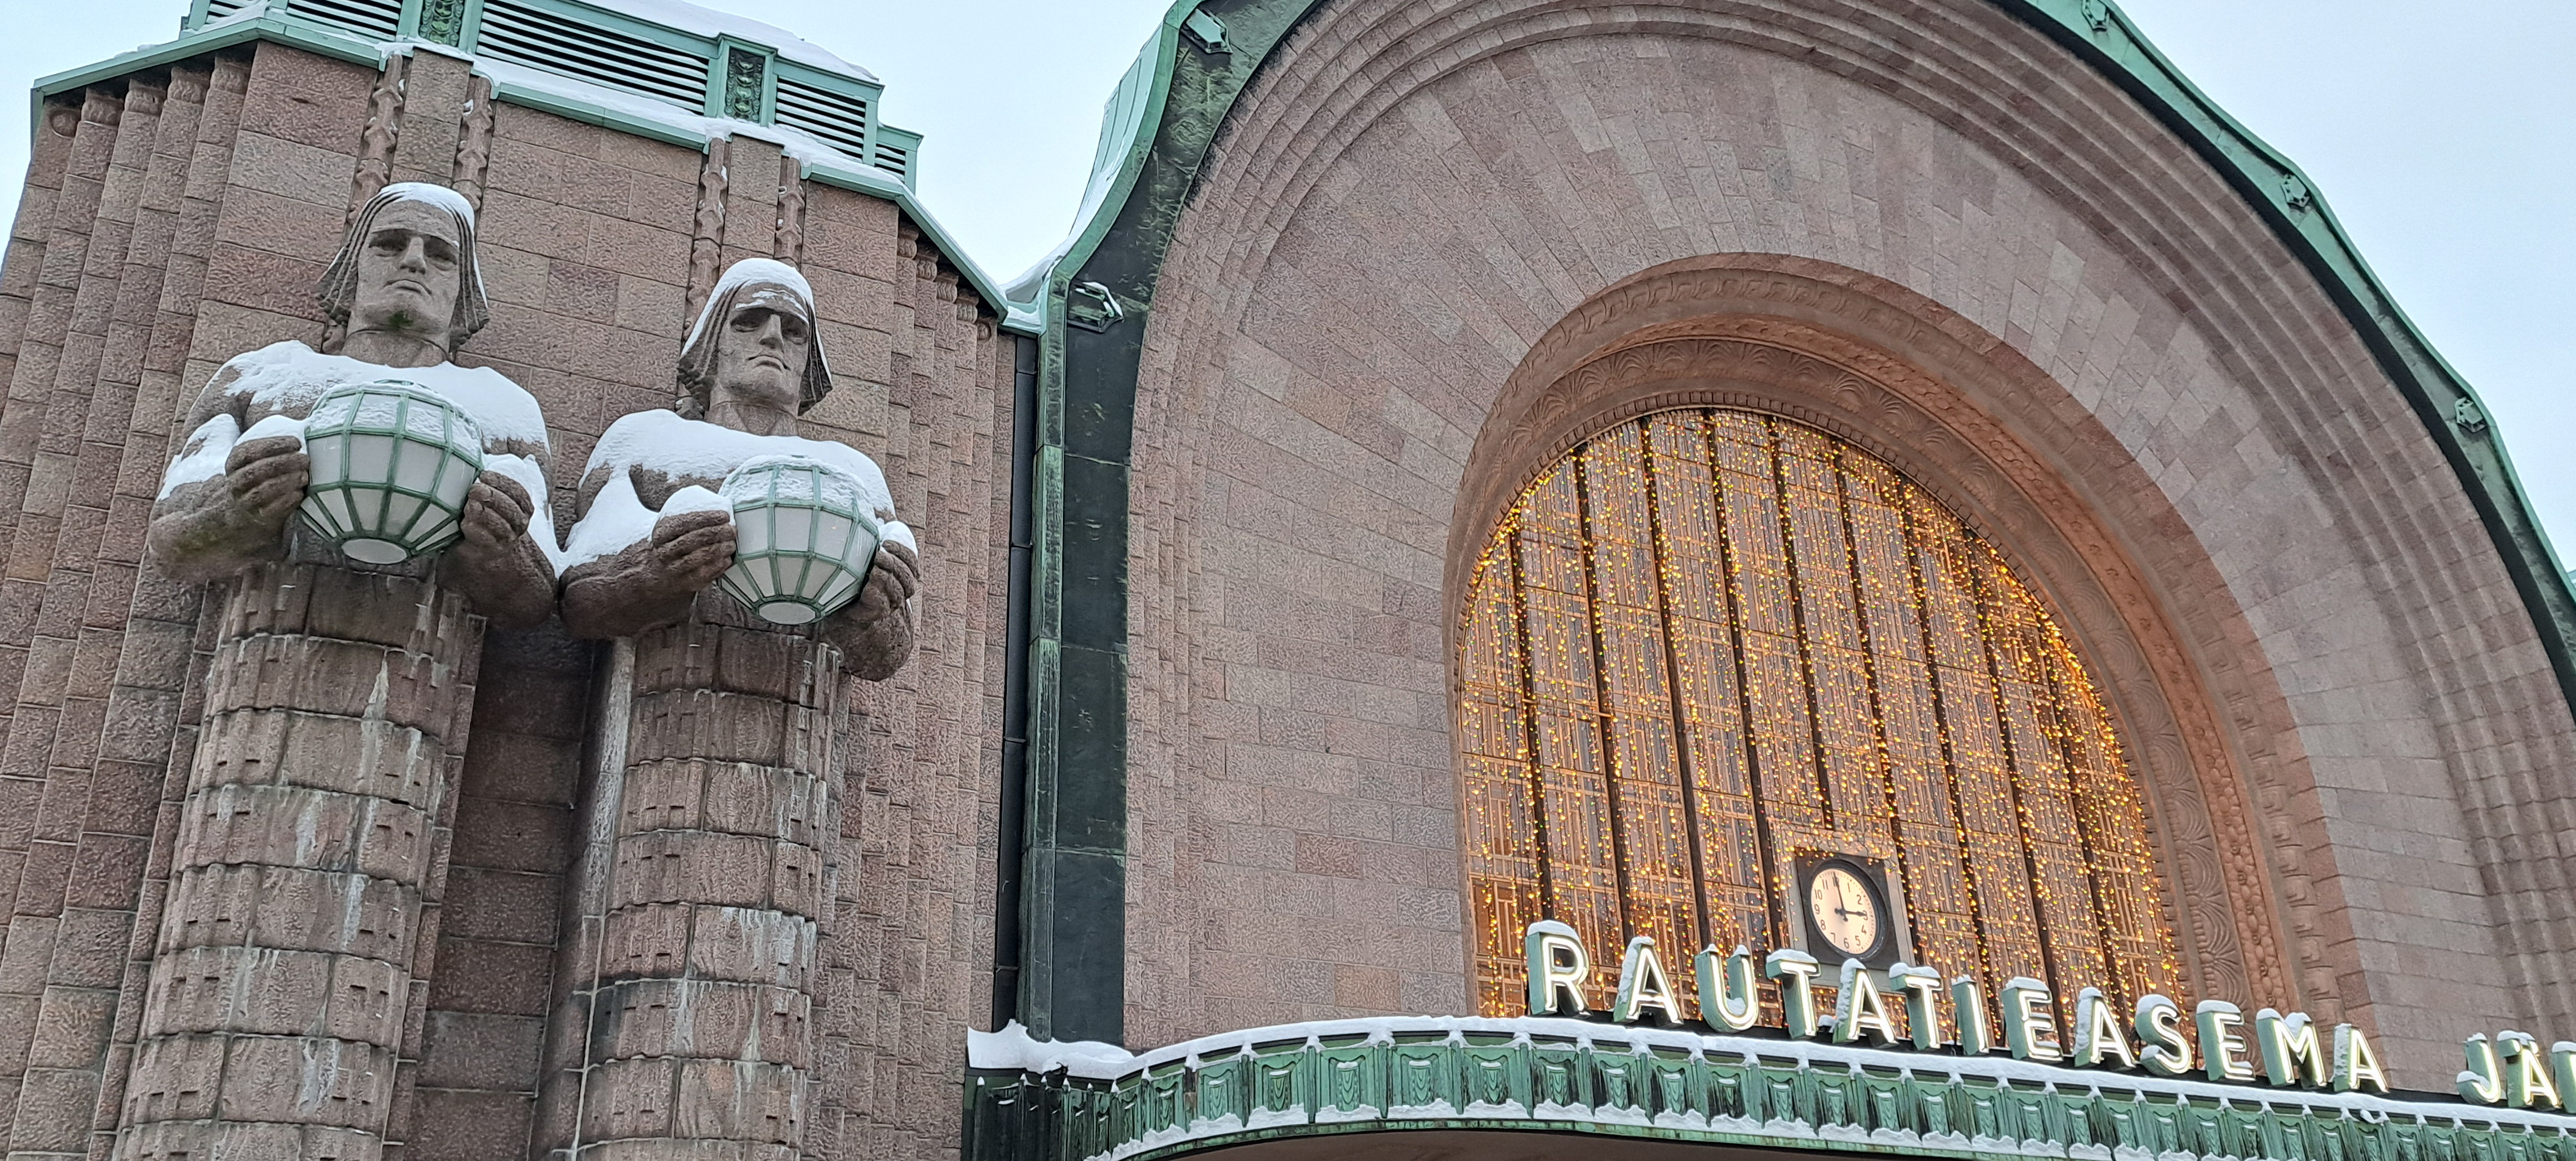 Central Station, Helsingin päärautatieasema, Helsinki